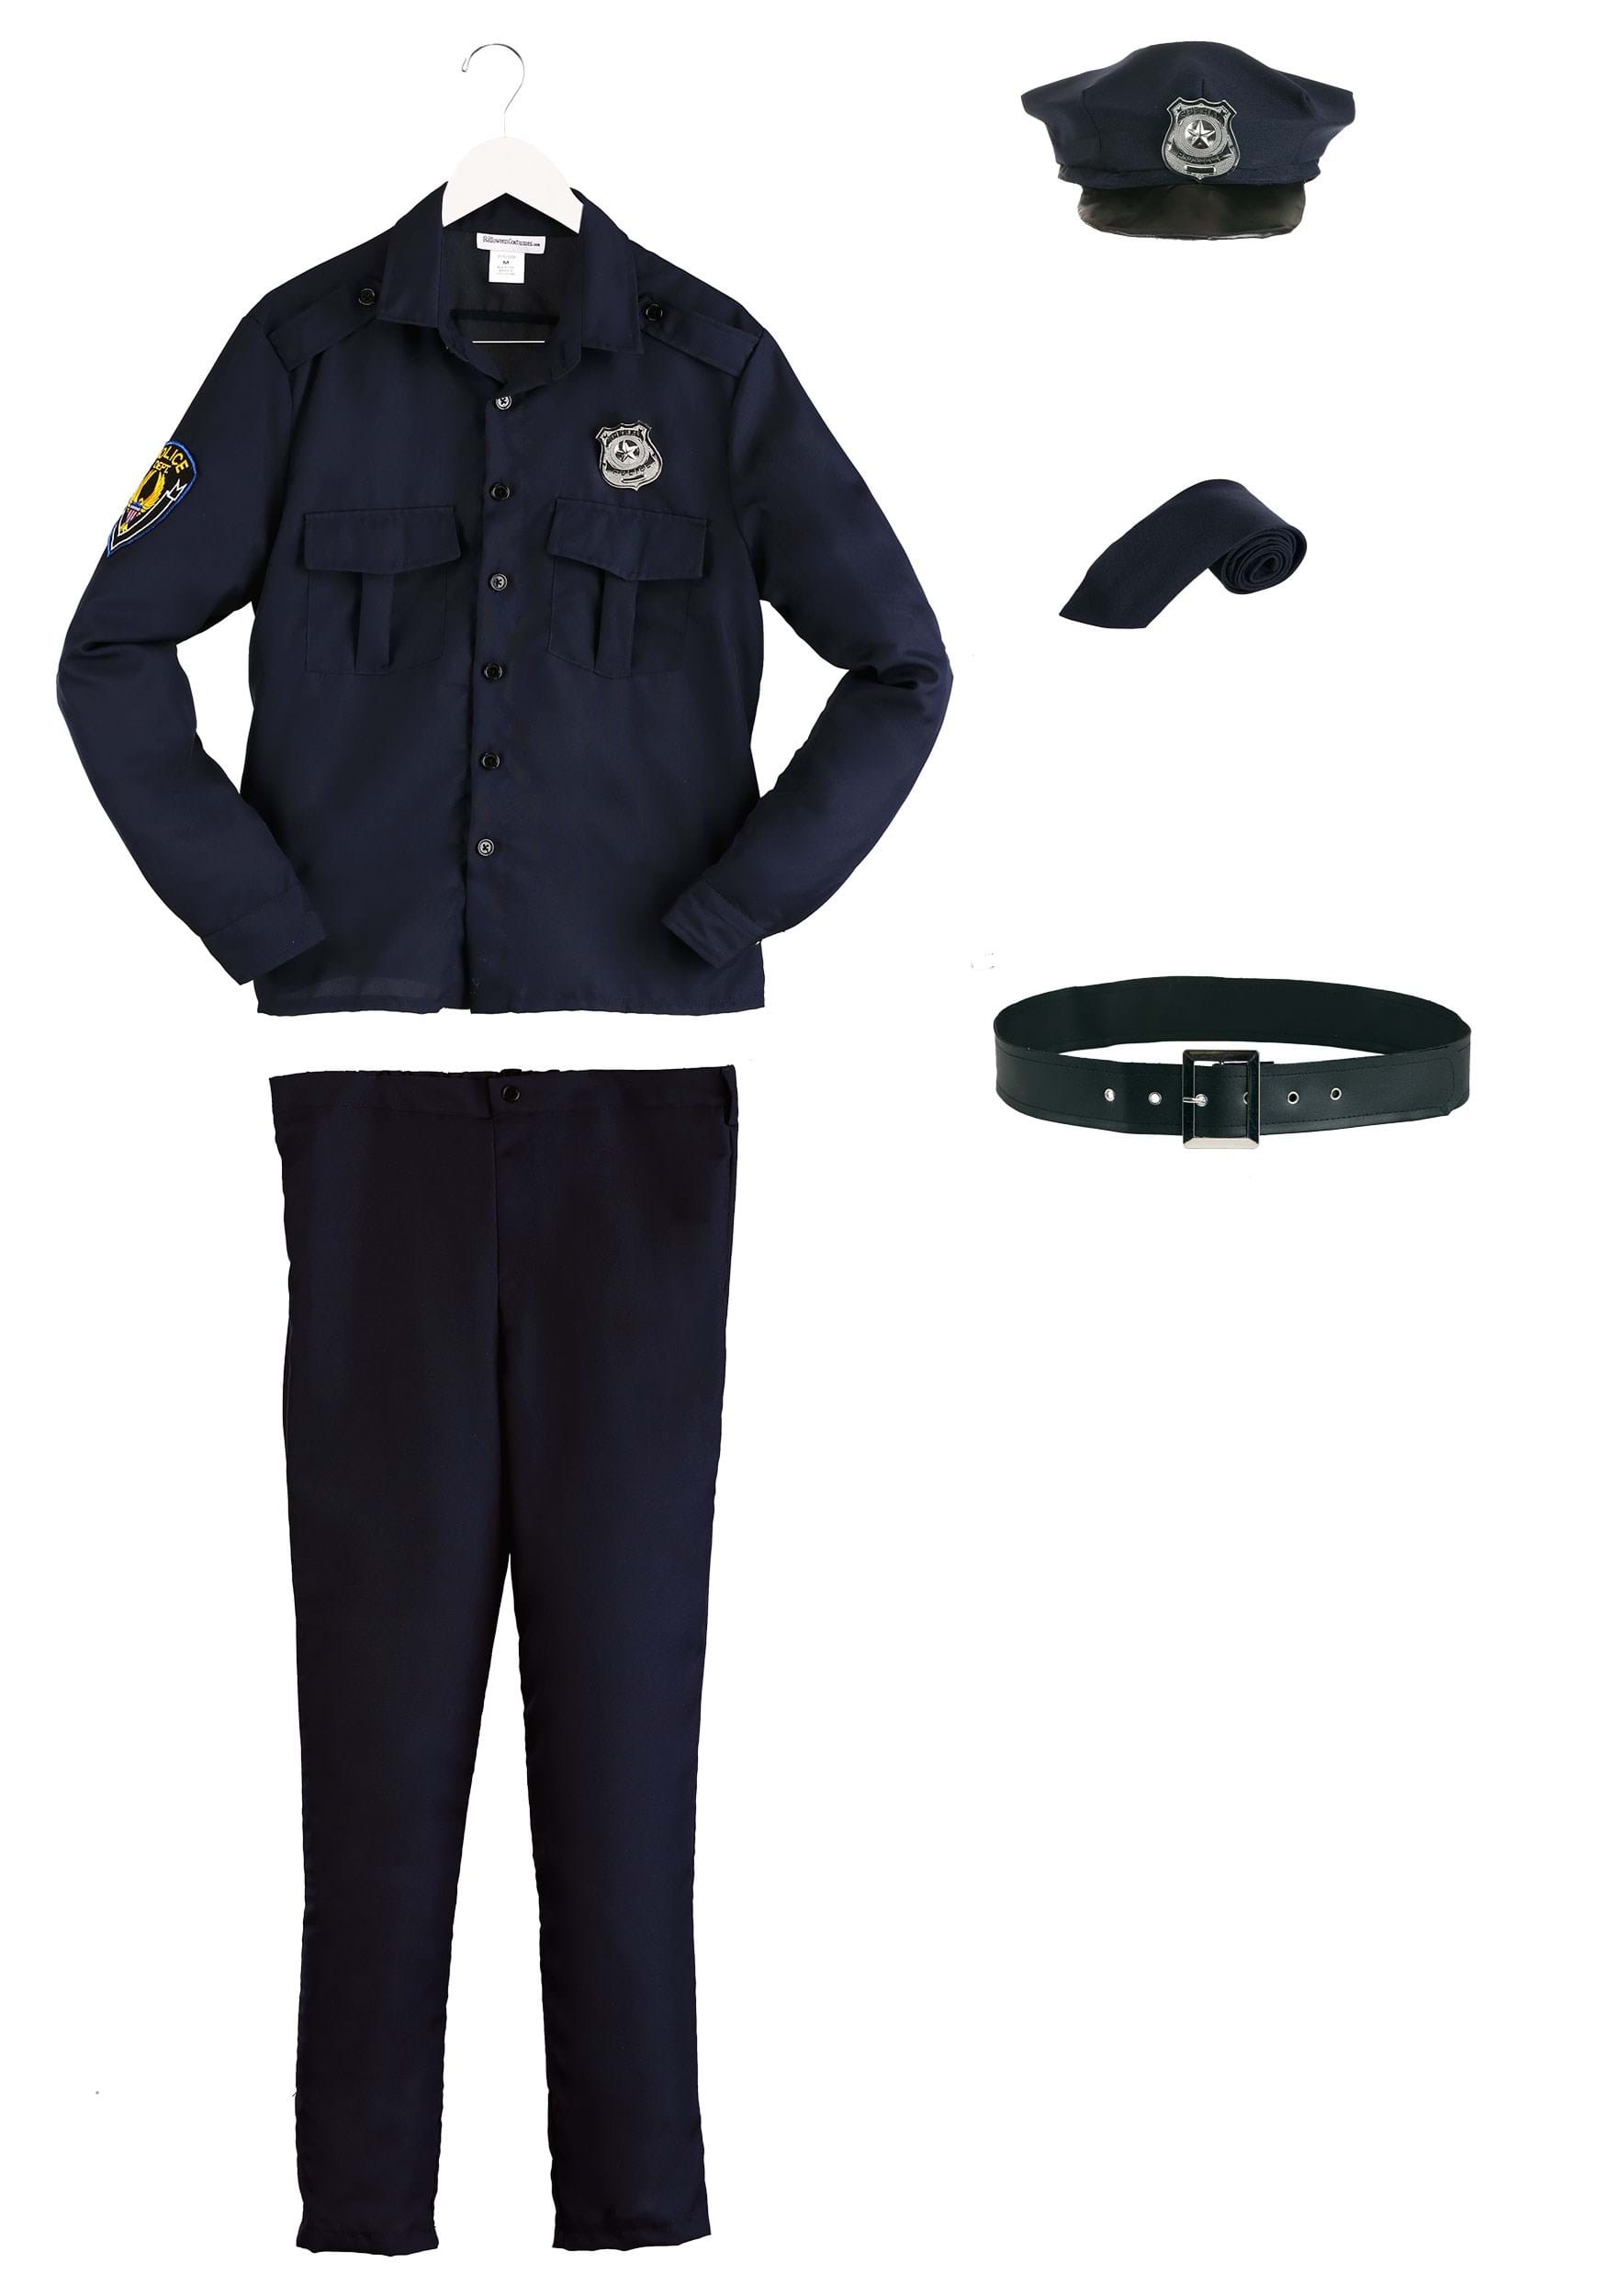 Authentic Cop Costume 